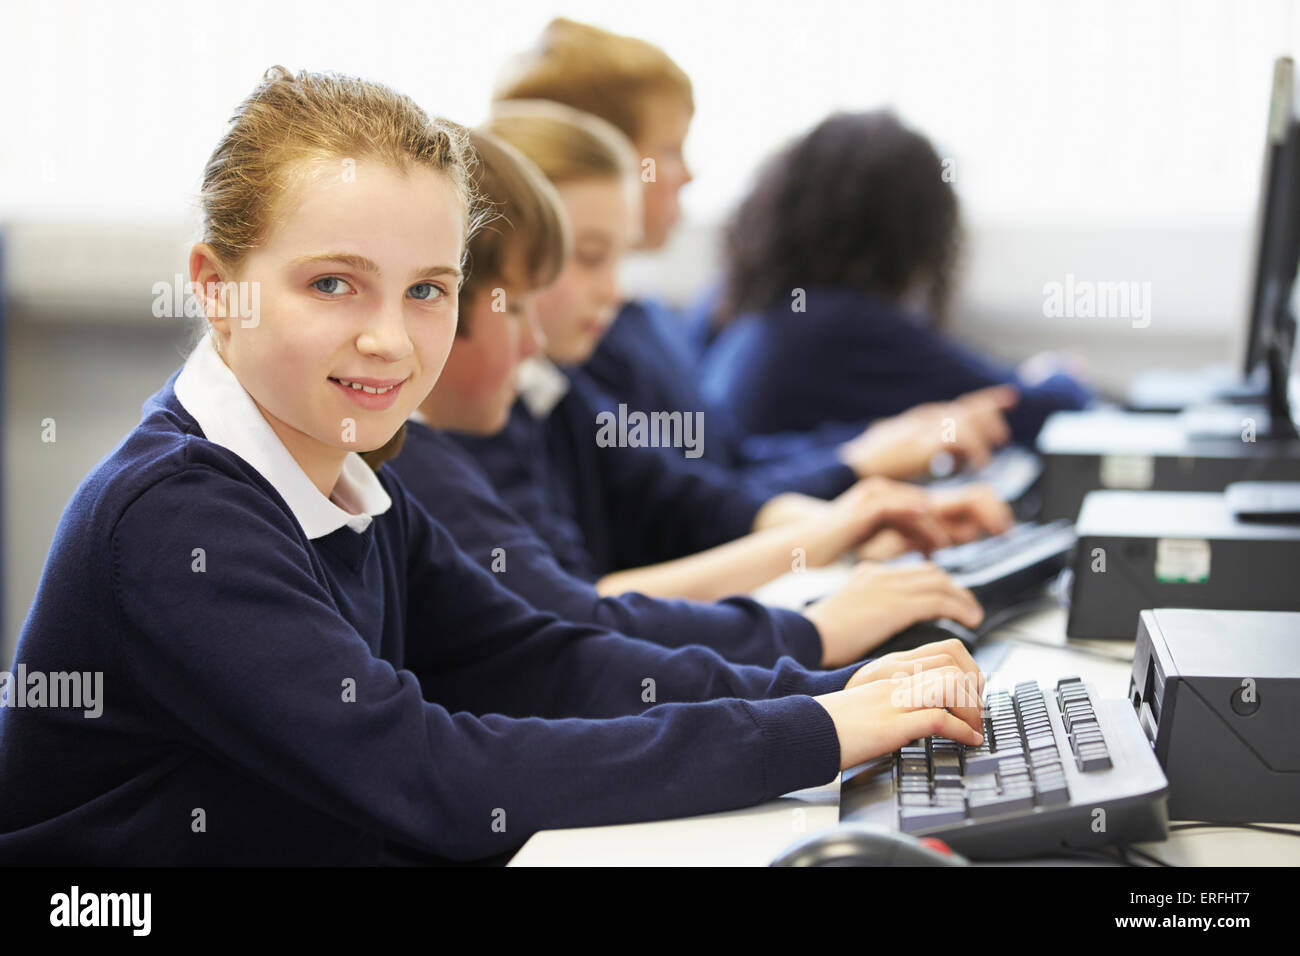 Line Of Children In School Computer Class Stock Photo